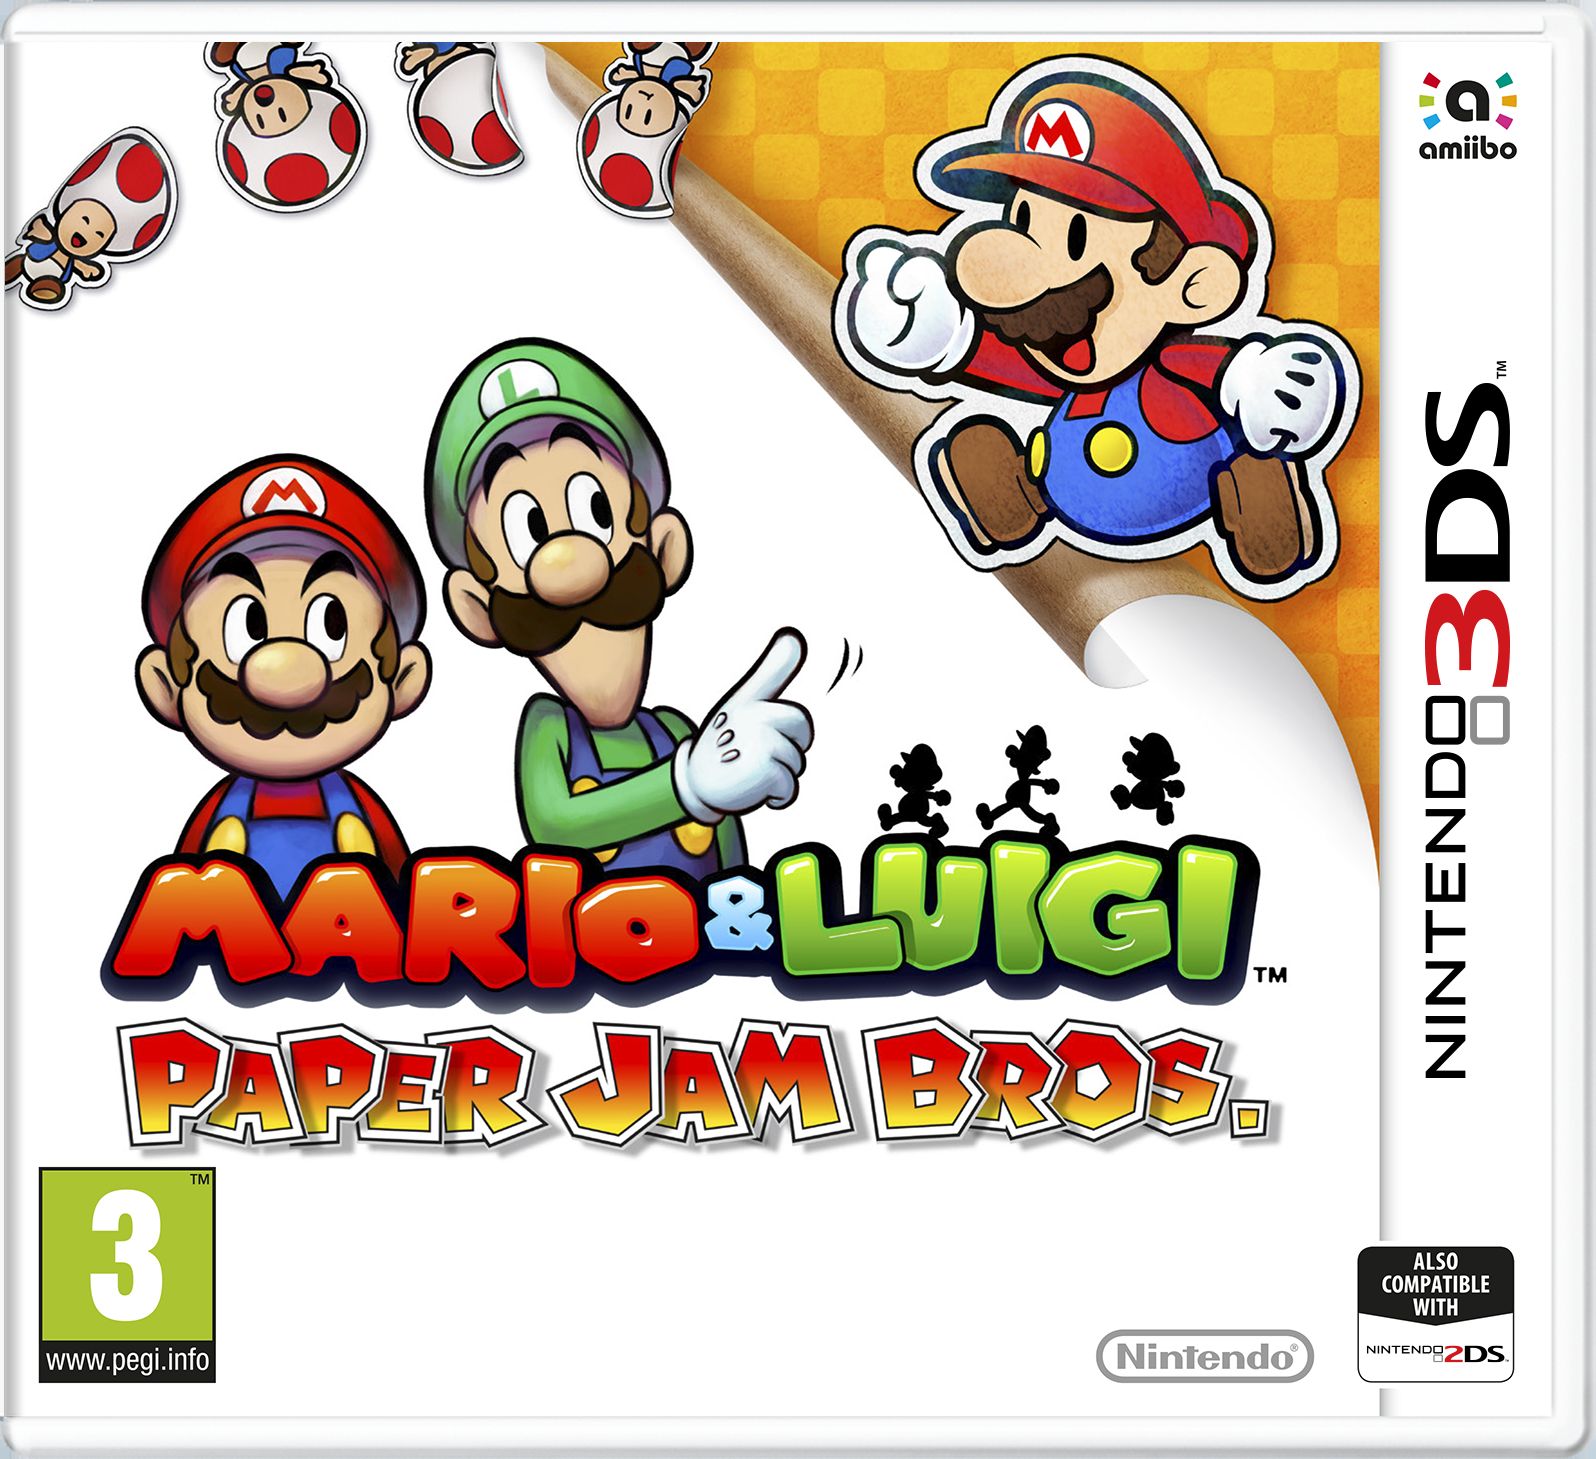 Mario-Luigi-Paper-Jam-Bros.jpg